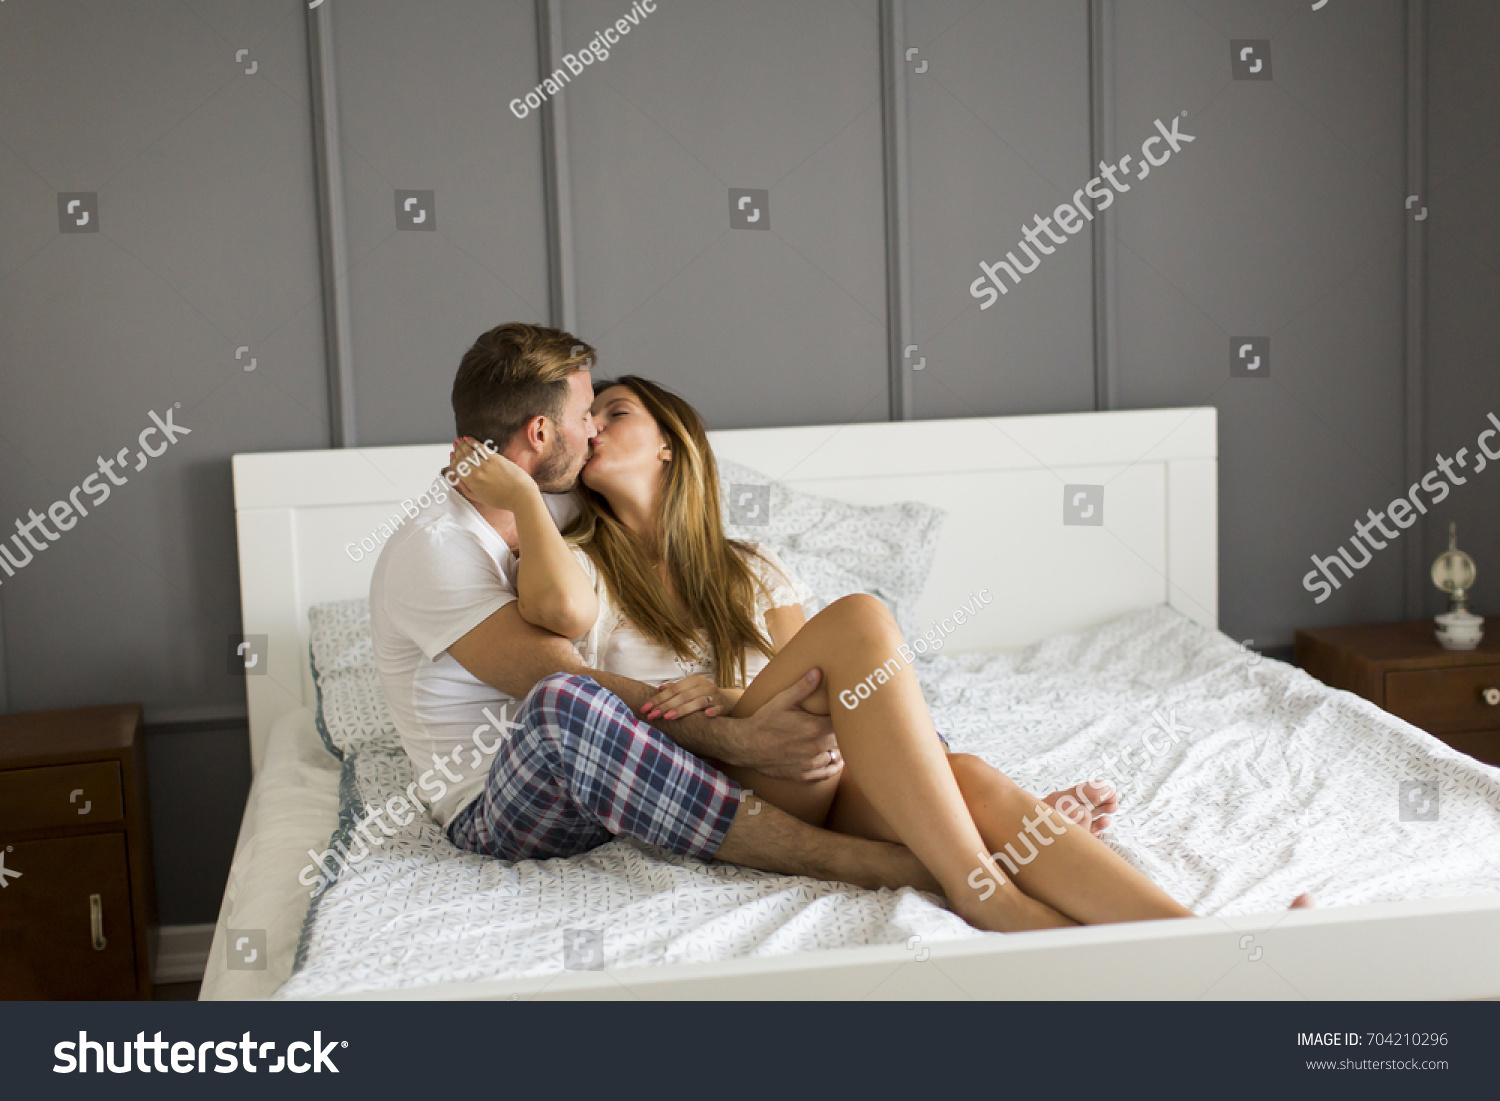 Лесбийская блондинка легла в постель с любовницей для куни и мастурбации